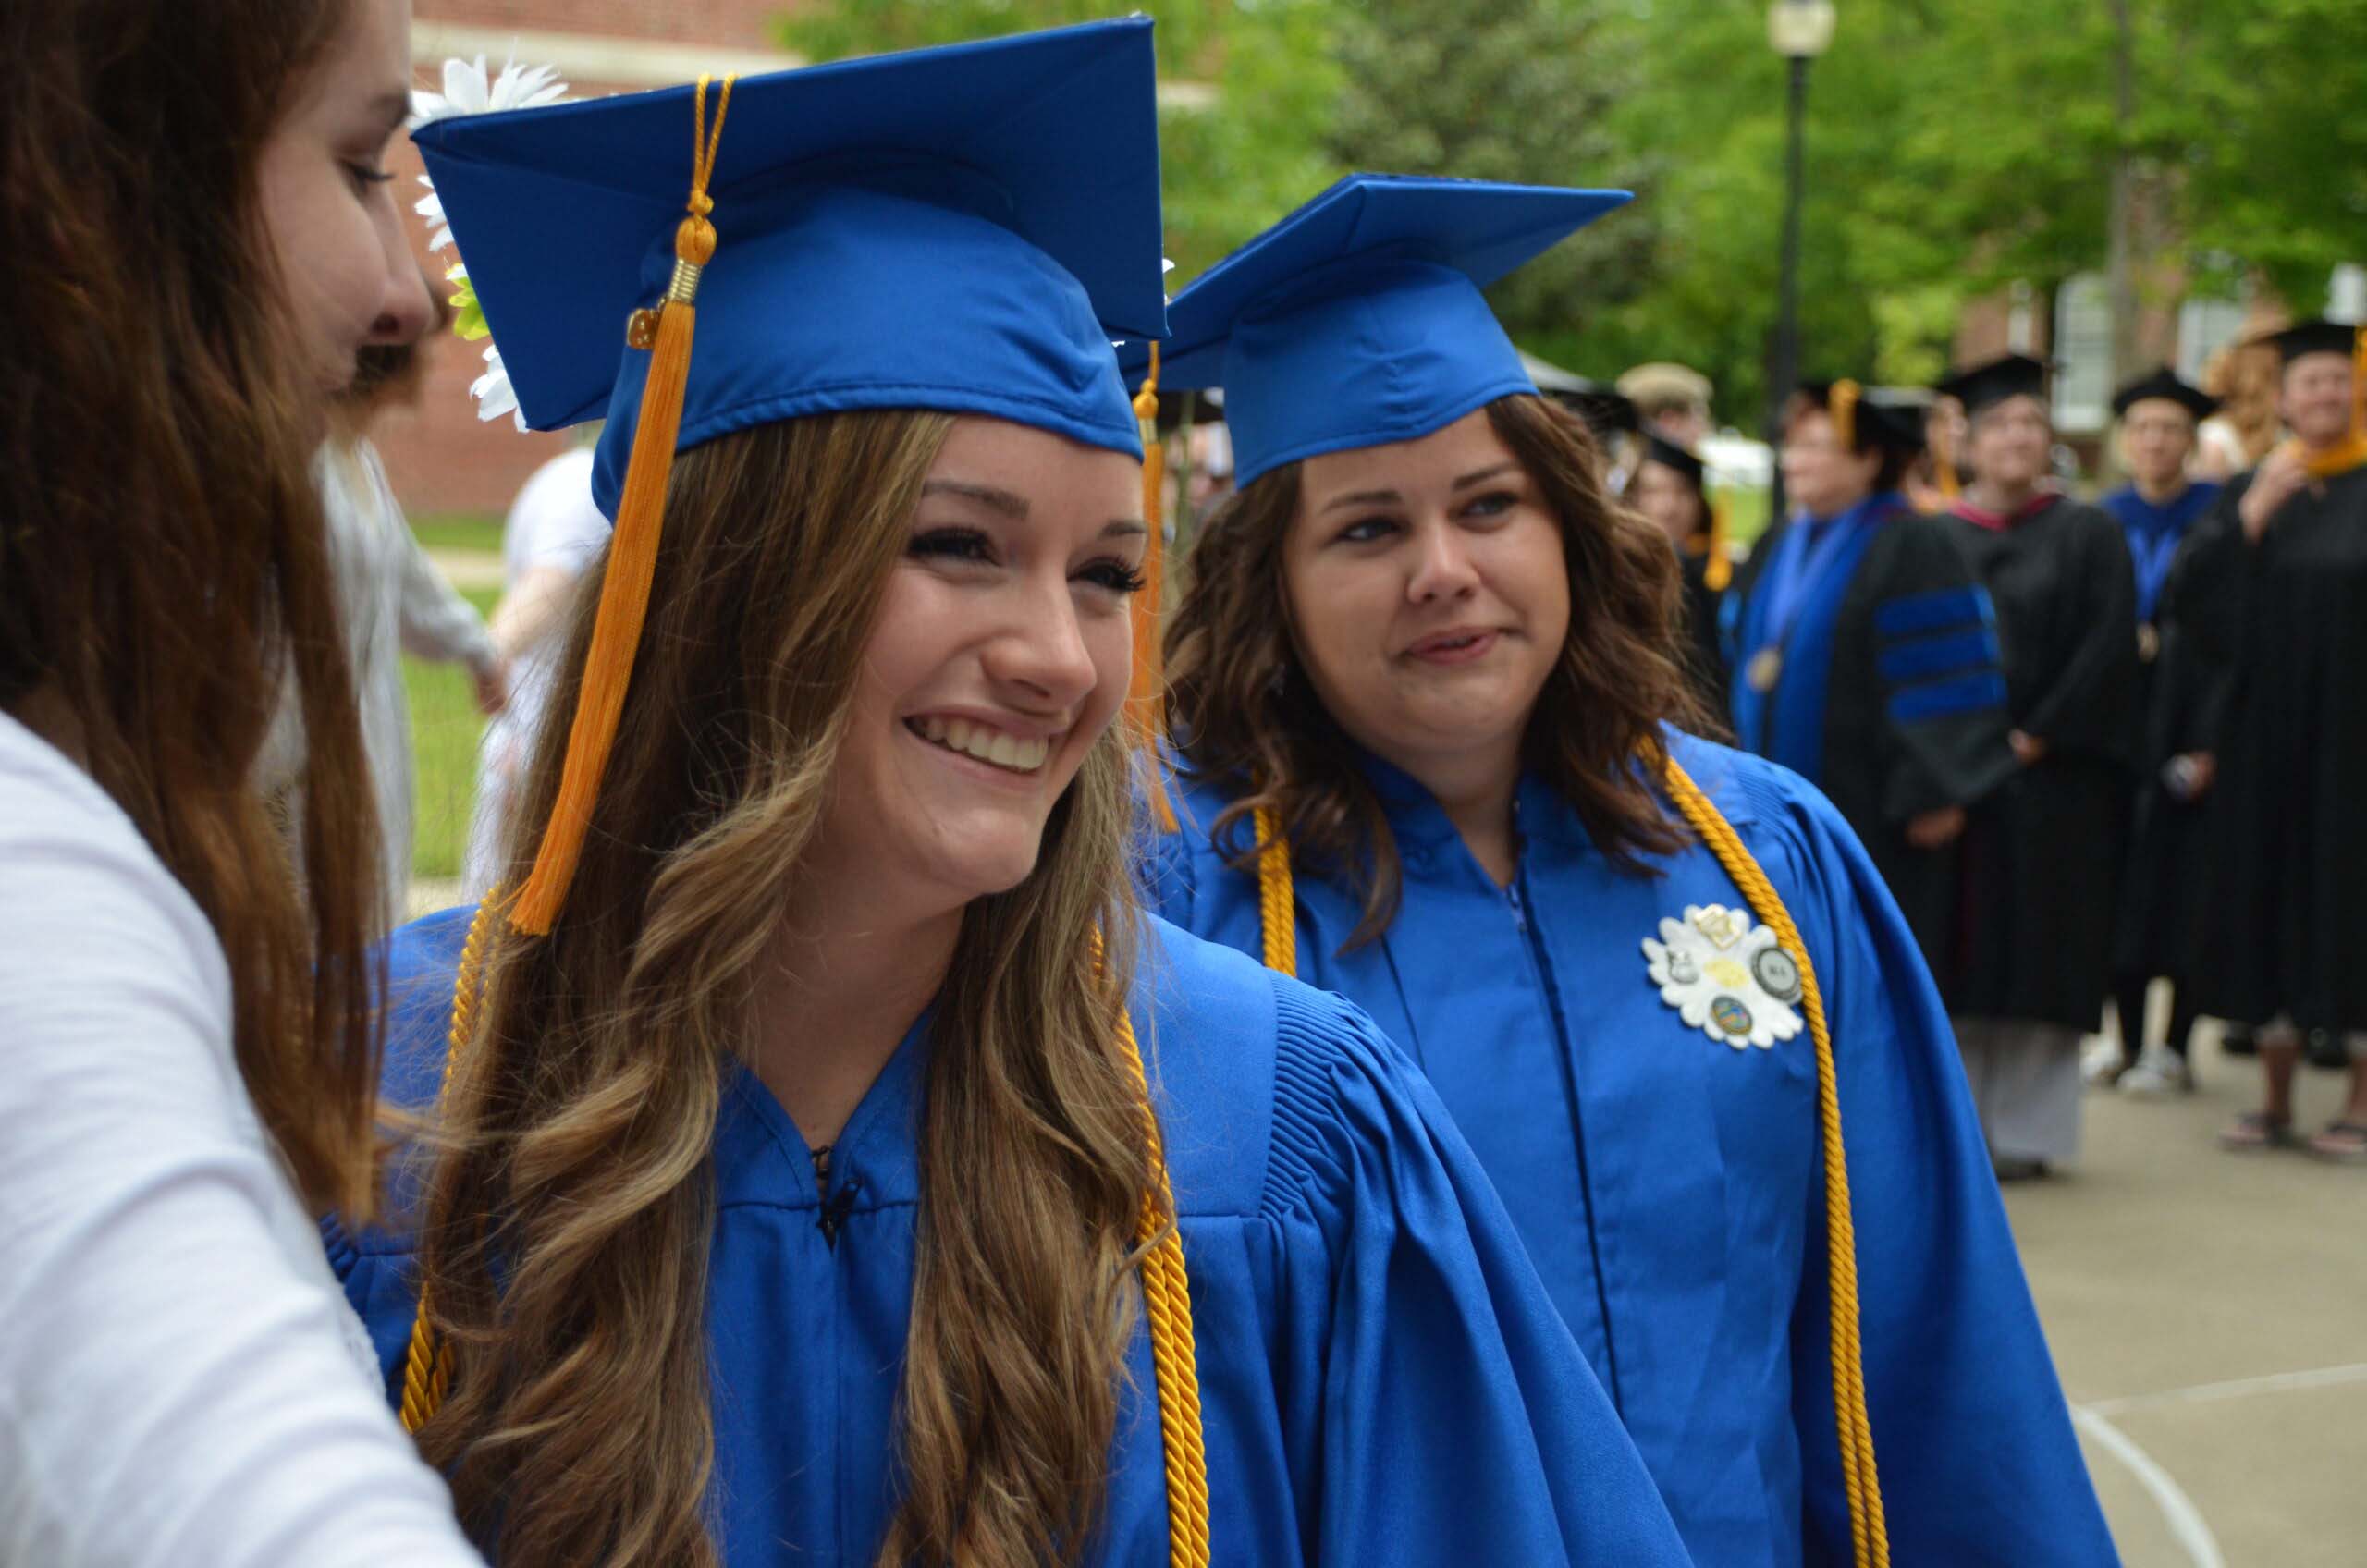 Cottey College graduates smiling in blue regalia